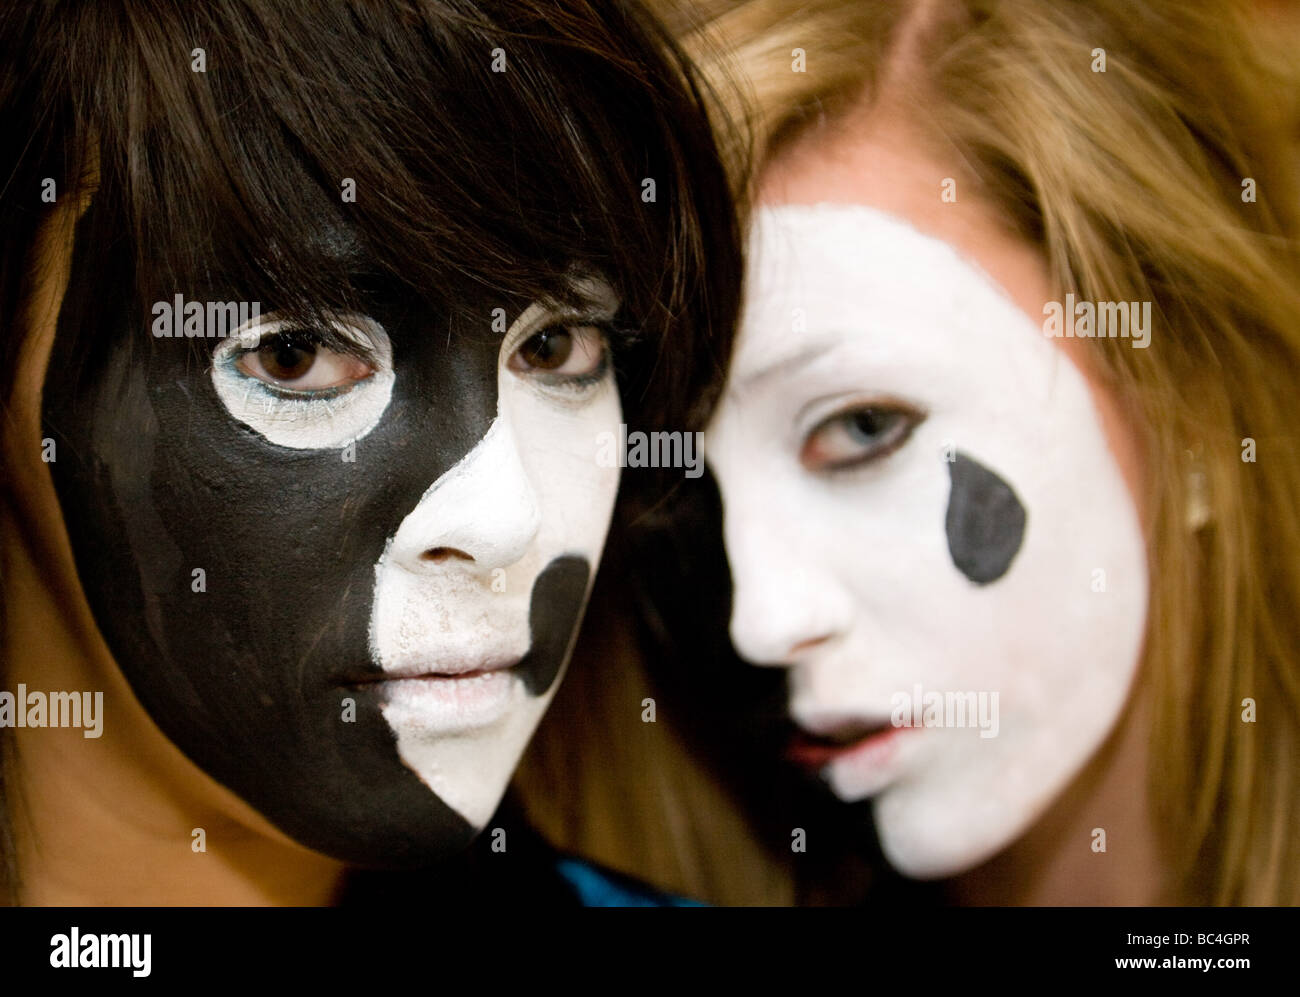 Zwei Mädchen im Teenageralter hatte ihre Gesichter in dramatischen Farben schwarz und weiß lackiert Stockfoto